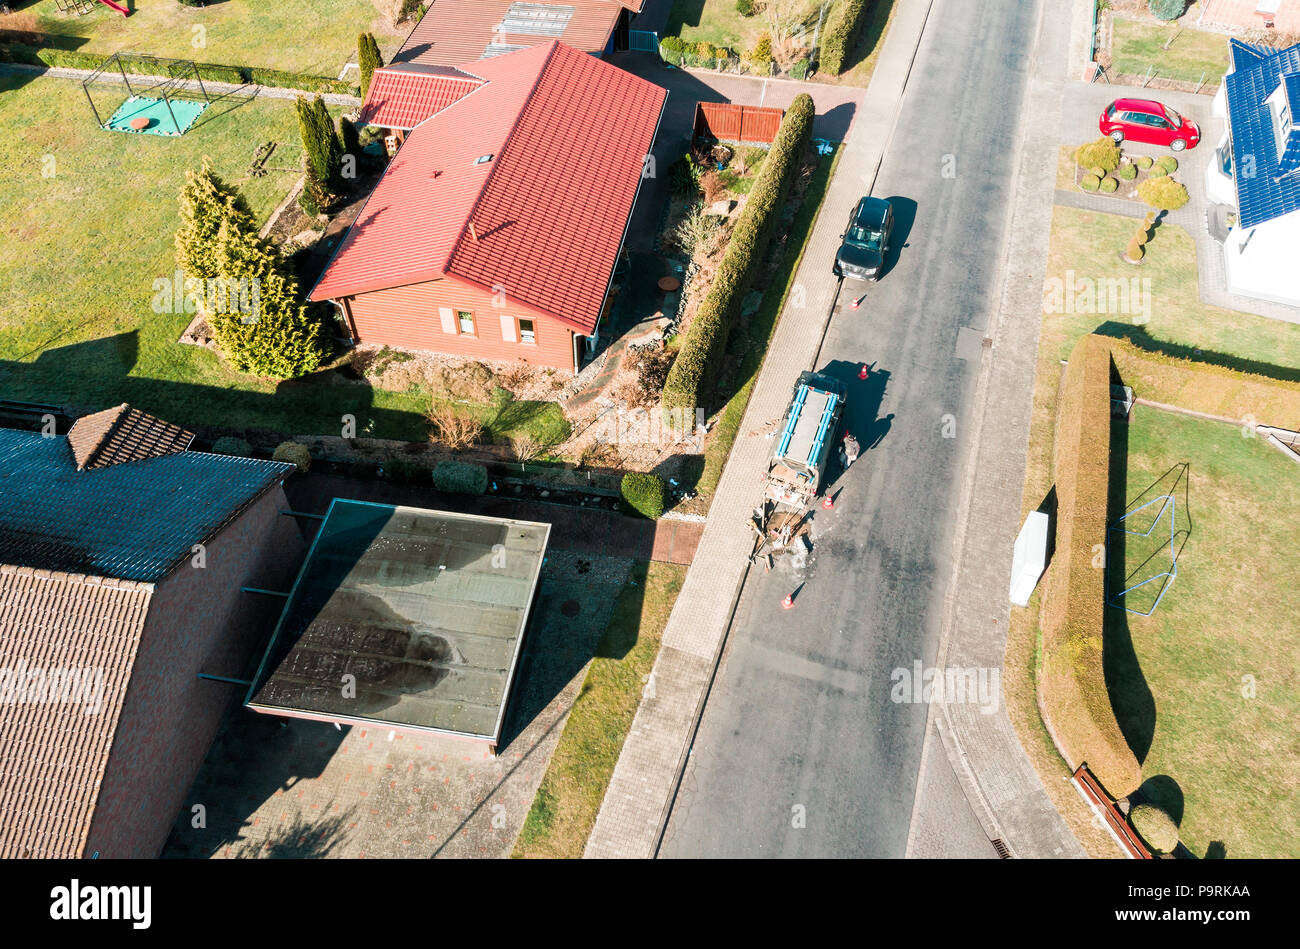 Vue aérienne d'une simple maison individuelle sur une route asphaltée gray village road, sur lequel un ouvrier n'effectue des travaux de maintenance, faites avec drone Banque D'Images